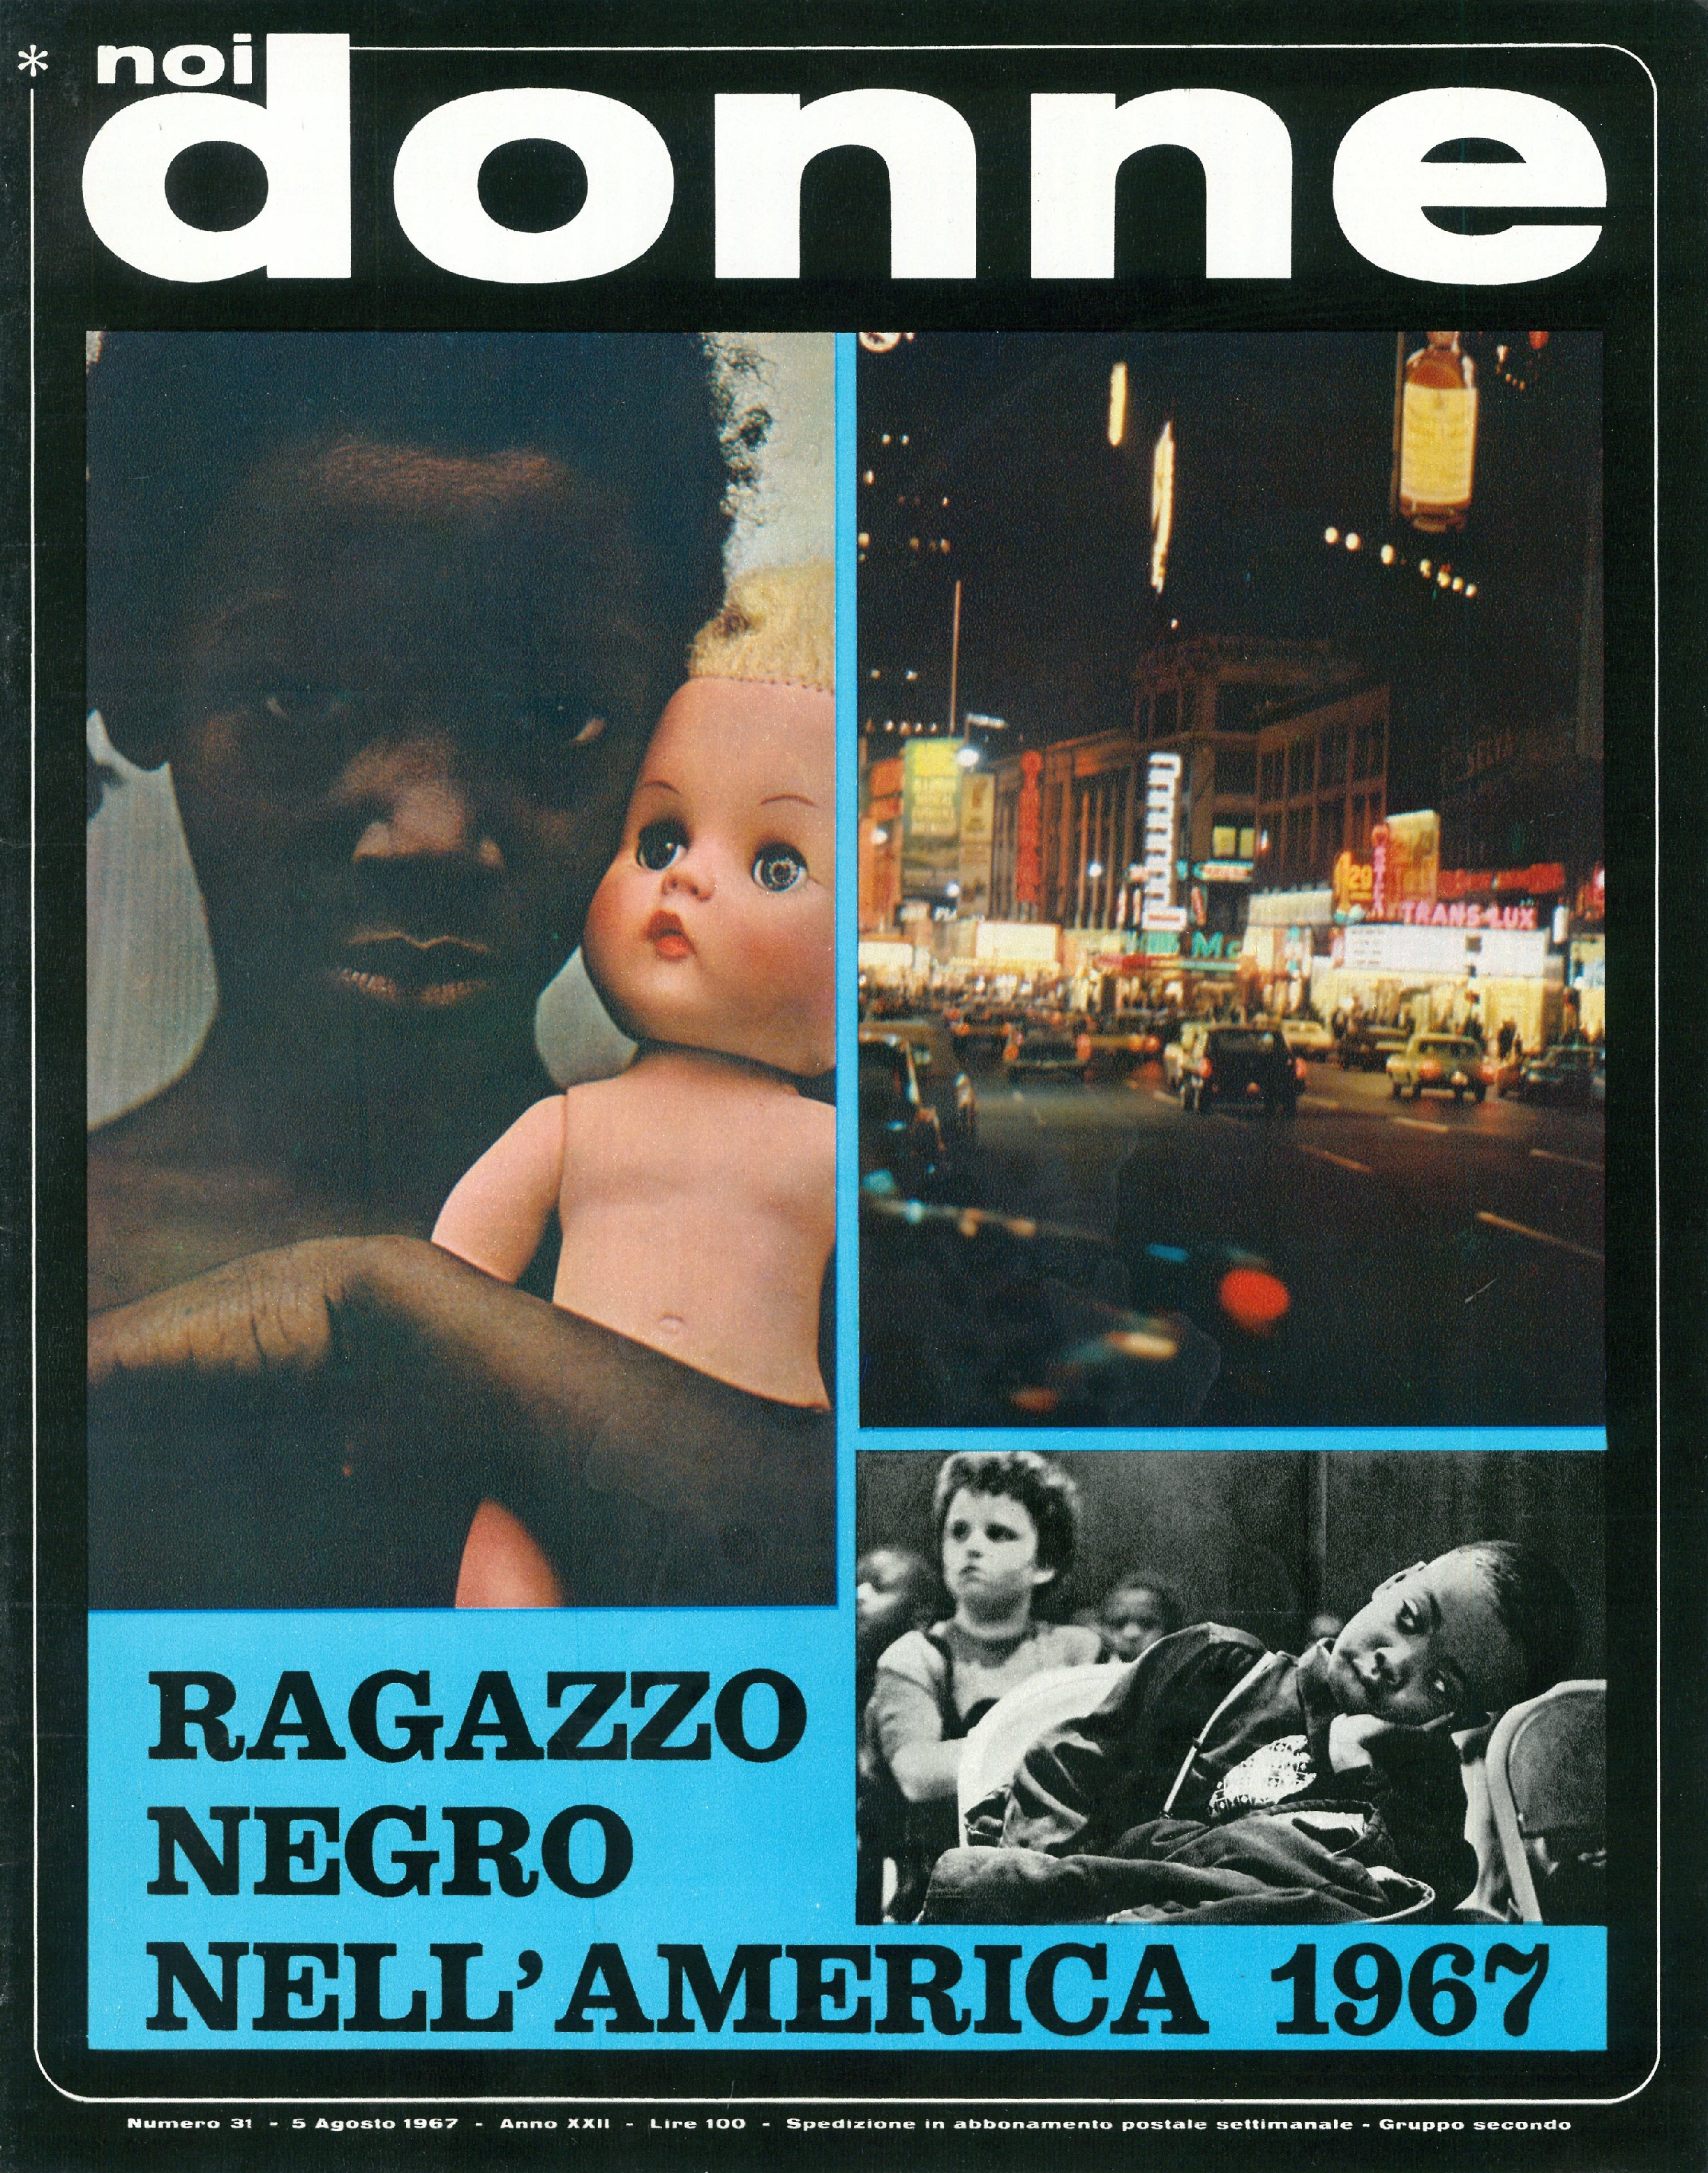 Foto: Il ragazzo negro nell'America del 1967